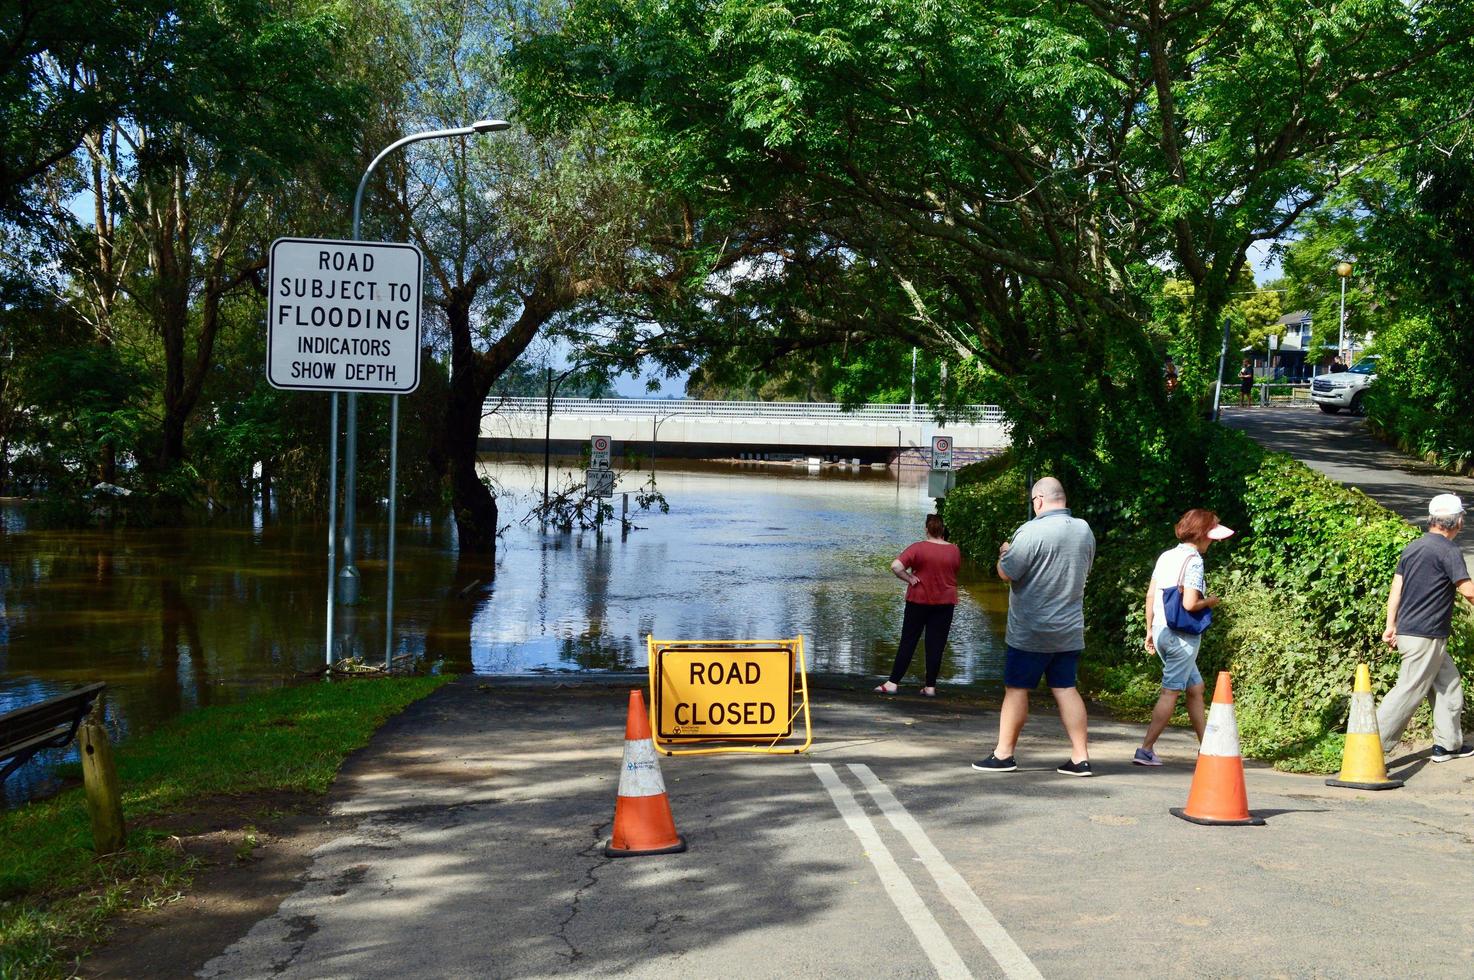 estrada cortada por inundações em windsor oeste de sydney austrália foto